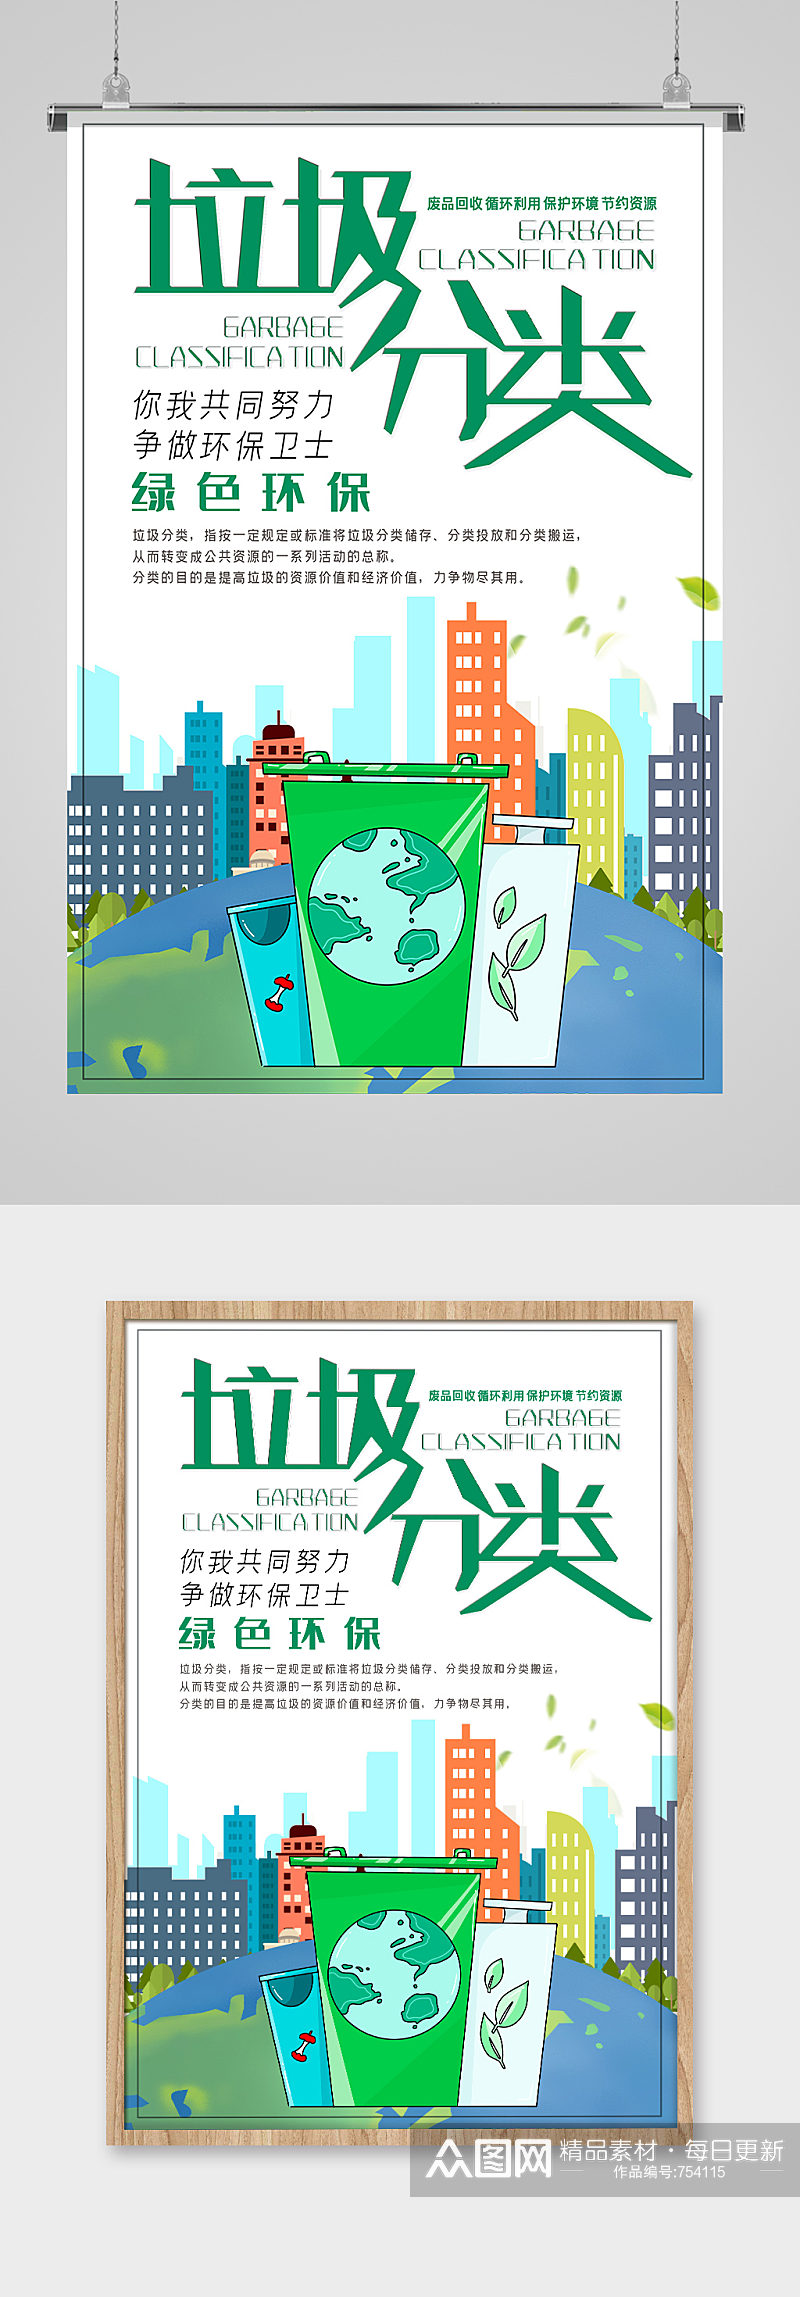 垃圾分类绿色环保城市宣传海报素材